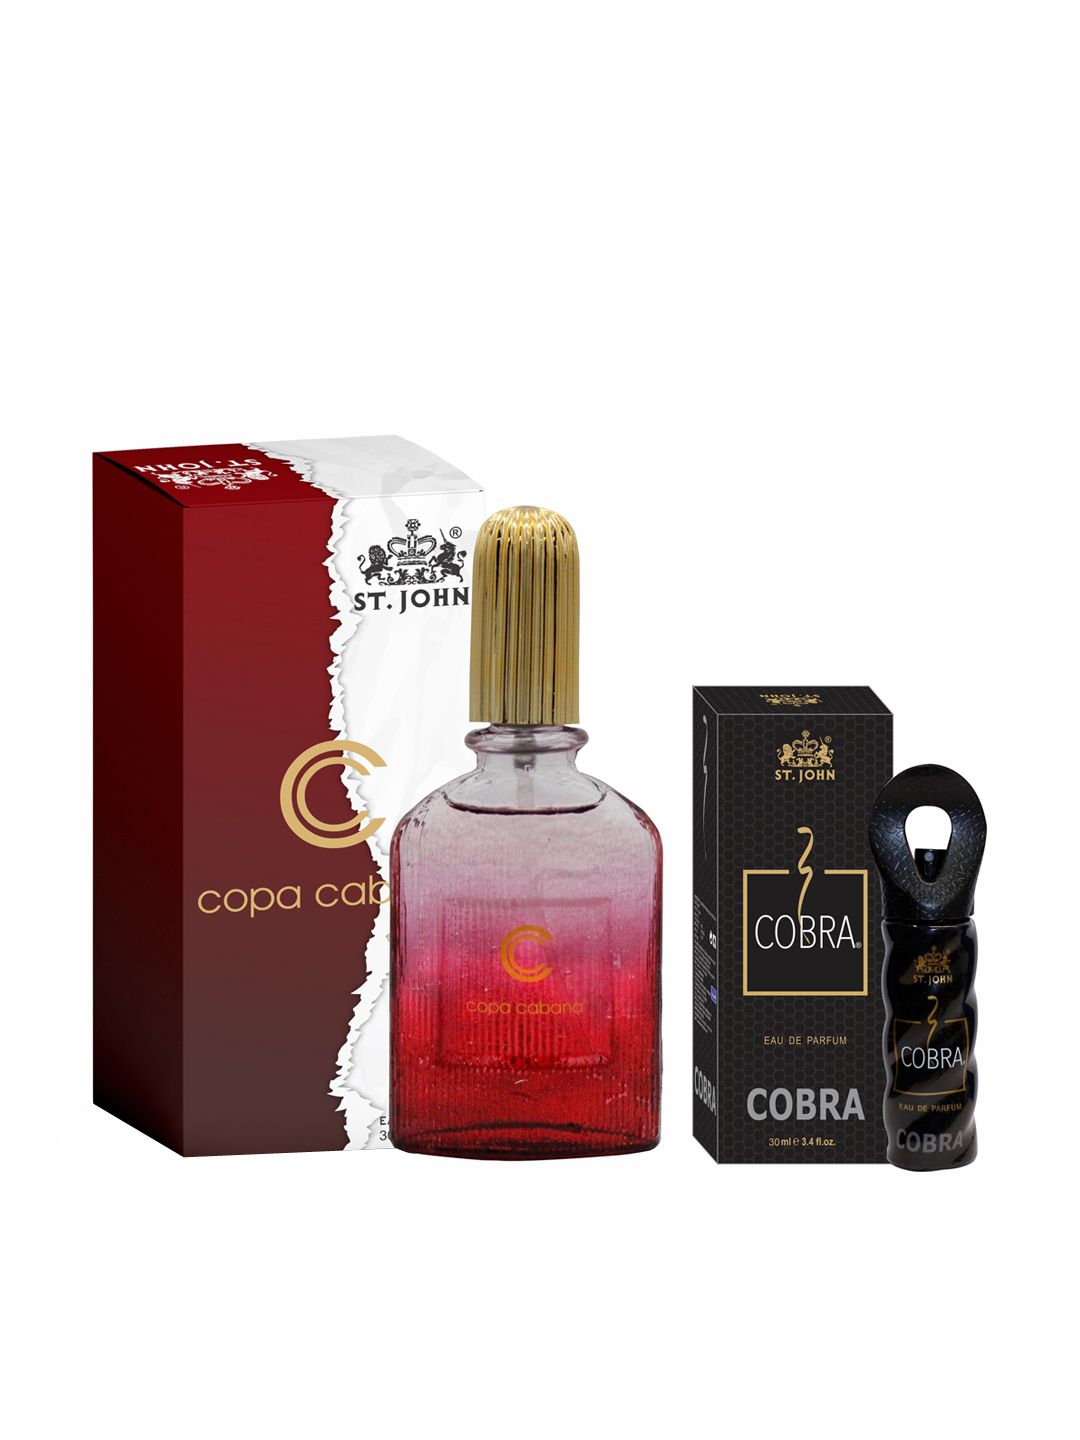 St. John Set of Copa Cabana & Cobra Eau De Parfum - 30 ml Each Price in India